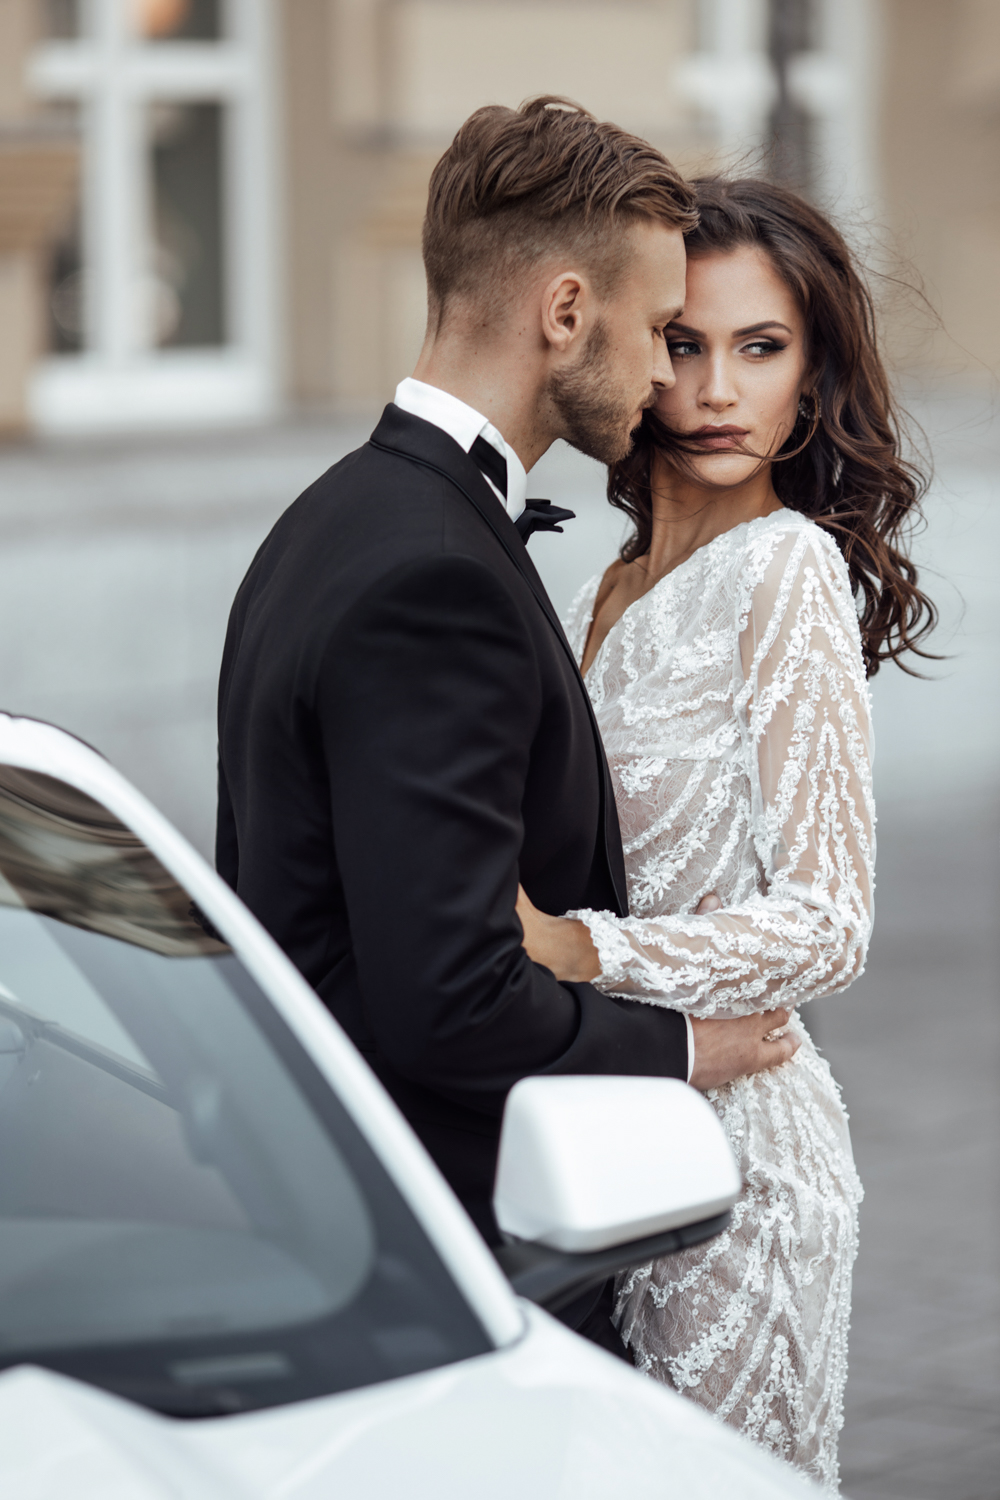 Vestuvių fotografas Vilnius, vestuvės, pasiruošimas vestuvinė fotosesija Kaunas